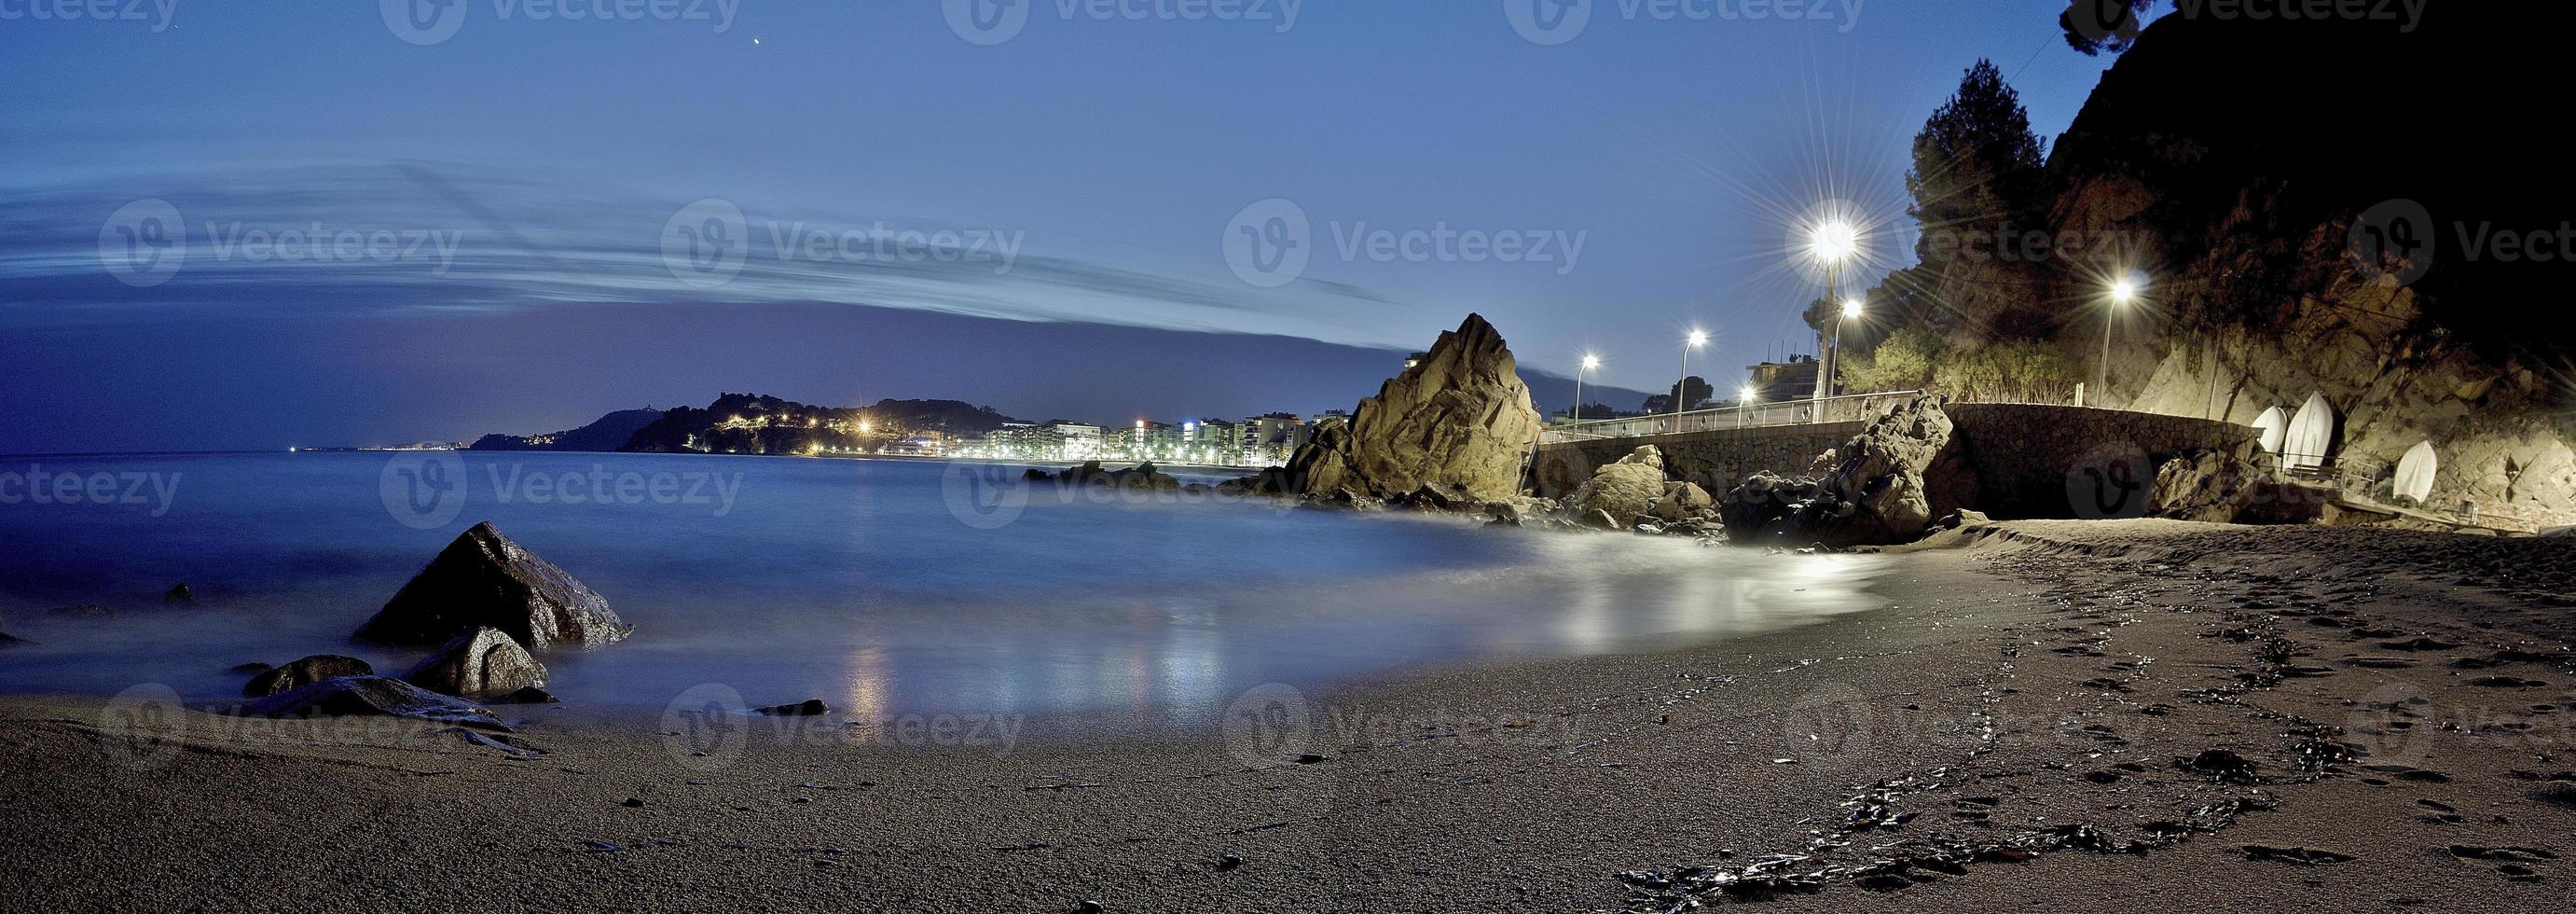 spiaggia di fronte al mare di notte a lloret de mar foto